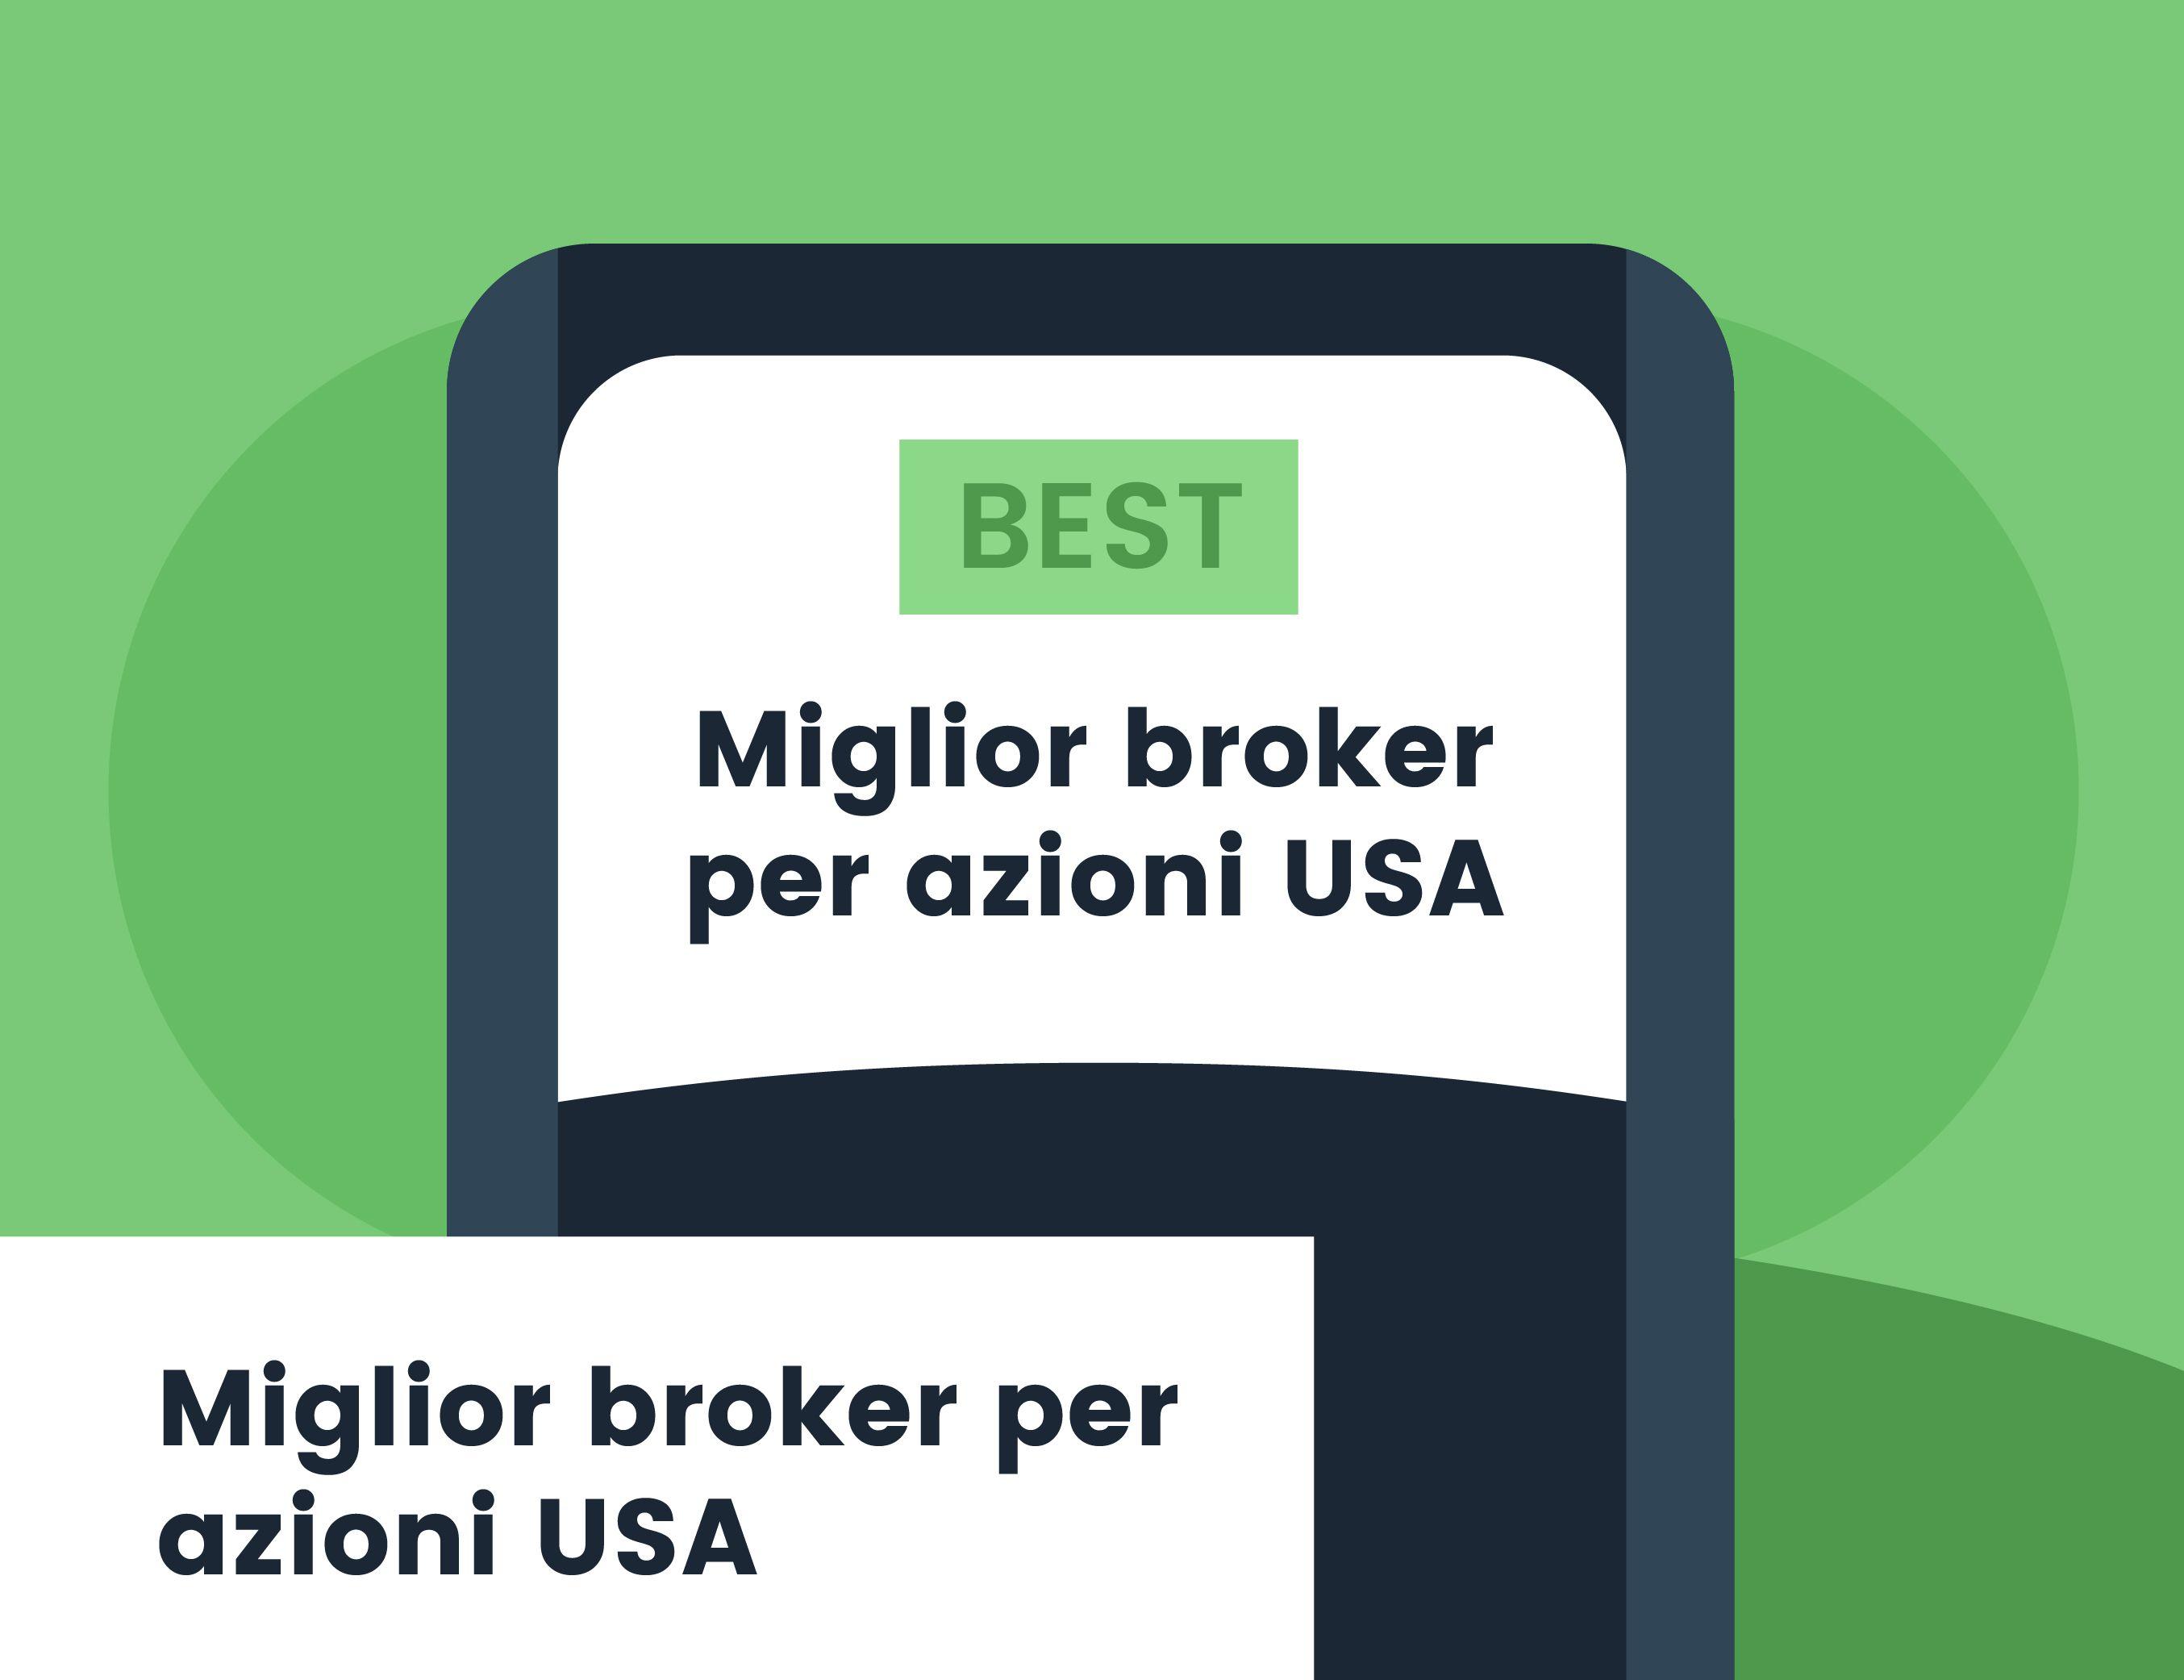 Miglior broker per azioni italiane